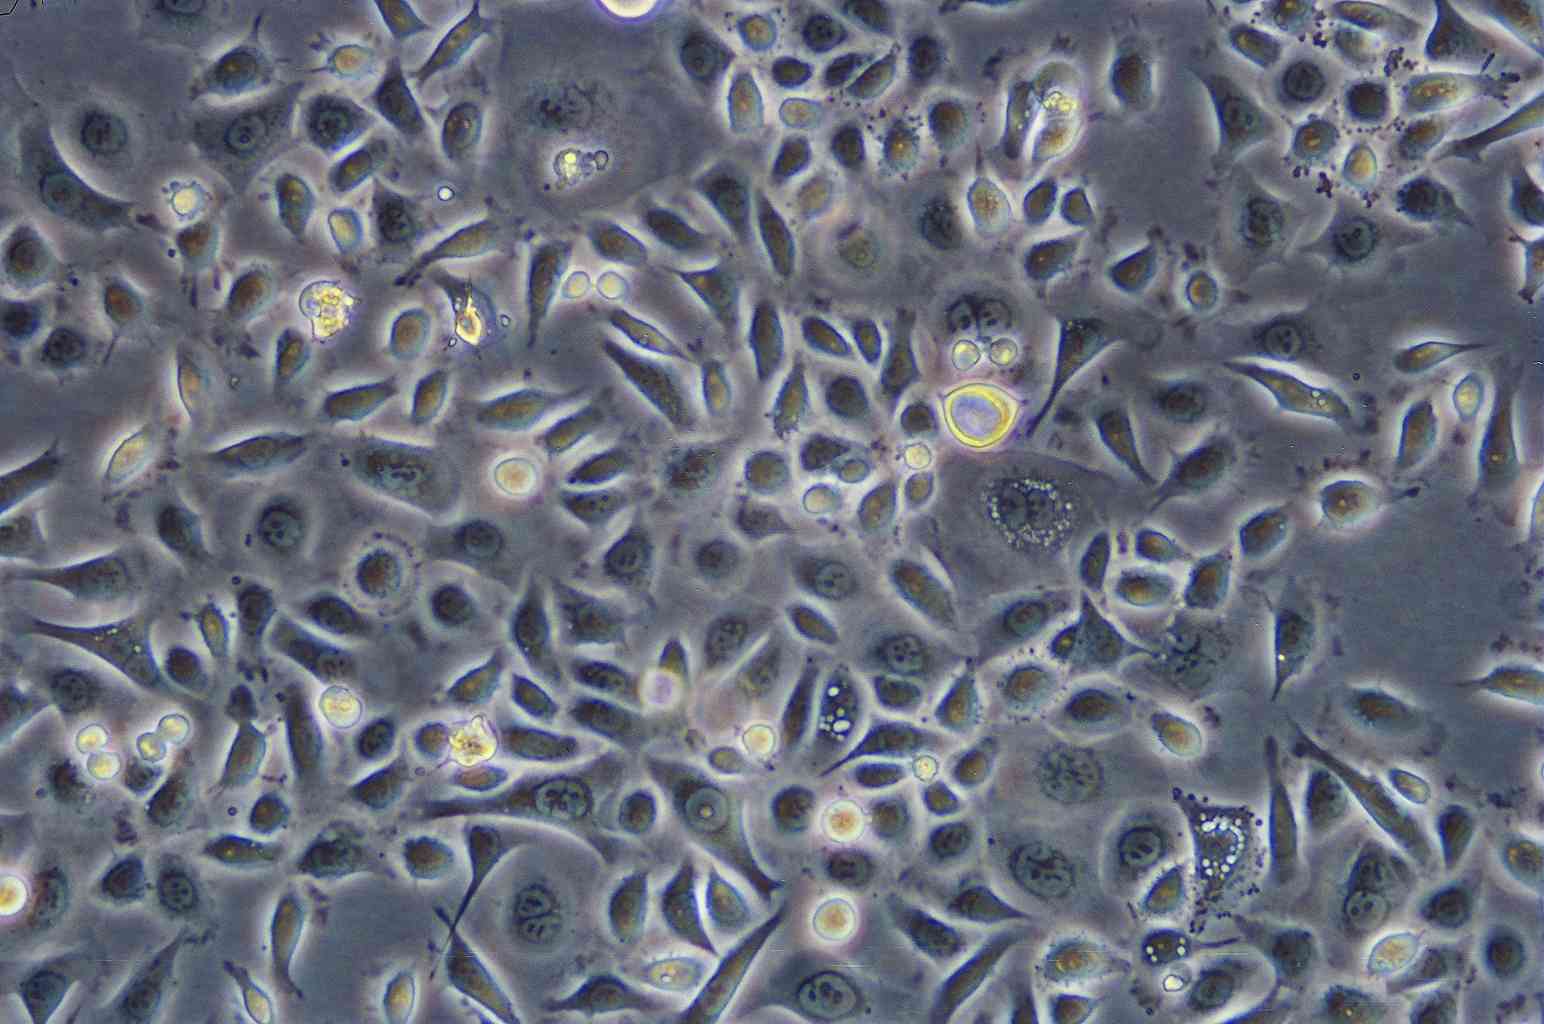 R2C epithelioid cells大鼠睾丸间质细胞系